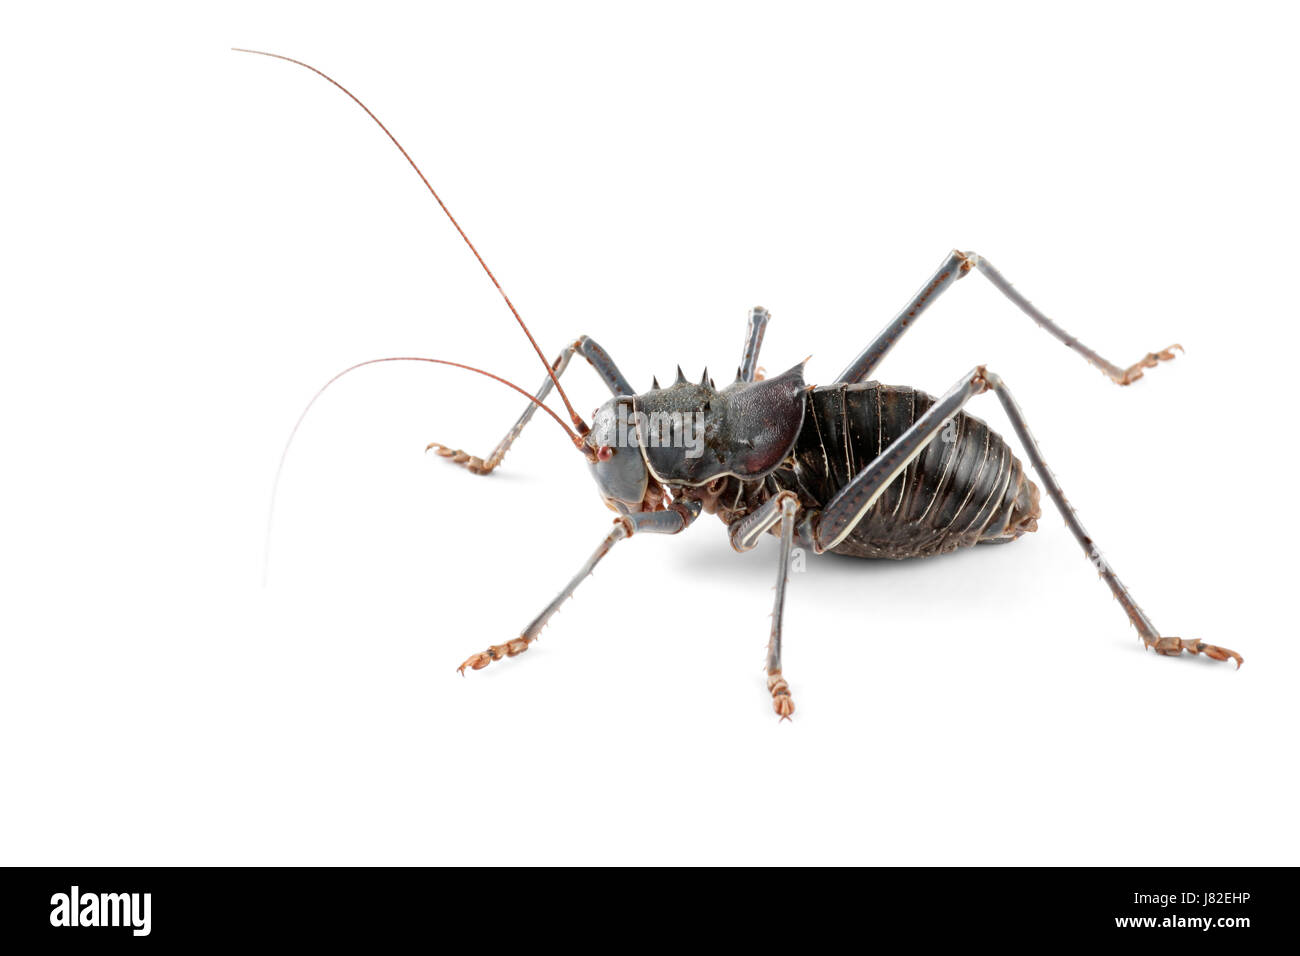 Isolato di insetto di cricket blindato natura di isolamento di chiudere le gambe macro close-up Foto Stock